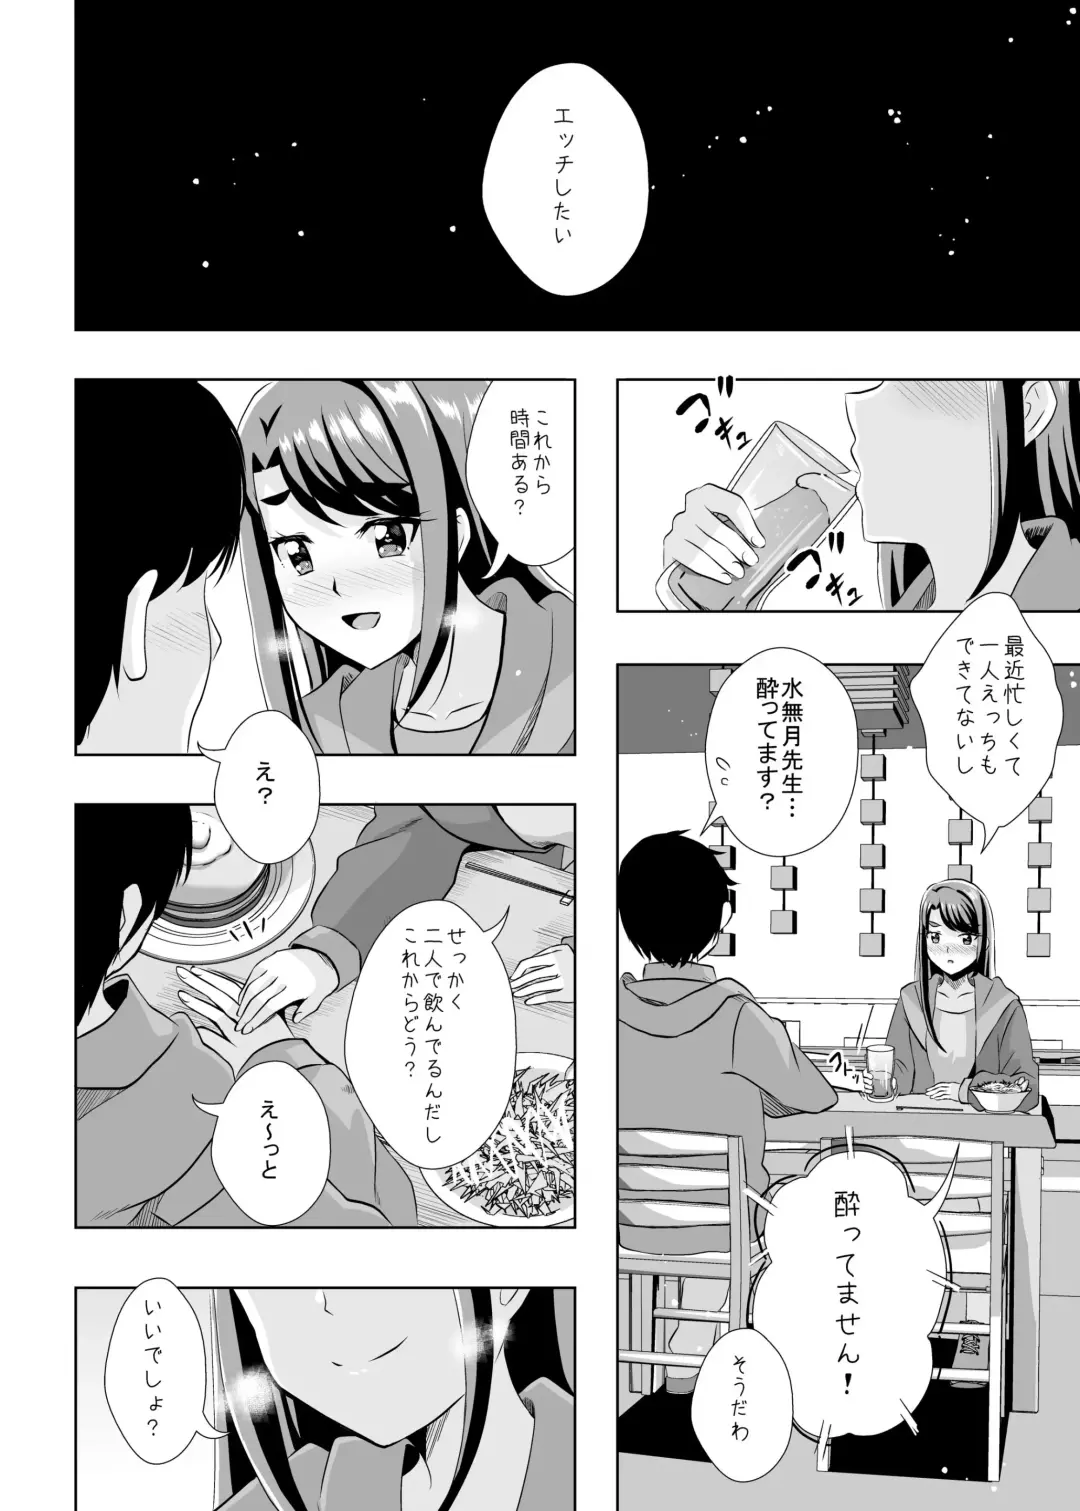 [Mira] Ecchi ga Suki ja Dame? Vol, 05 - Kibou no Chikara ~Otona Pretty Cure 23~ Fhentai.net - Page 2